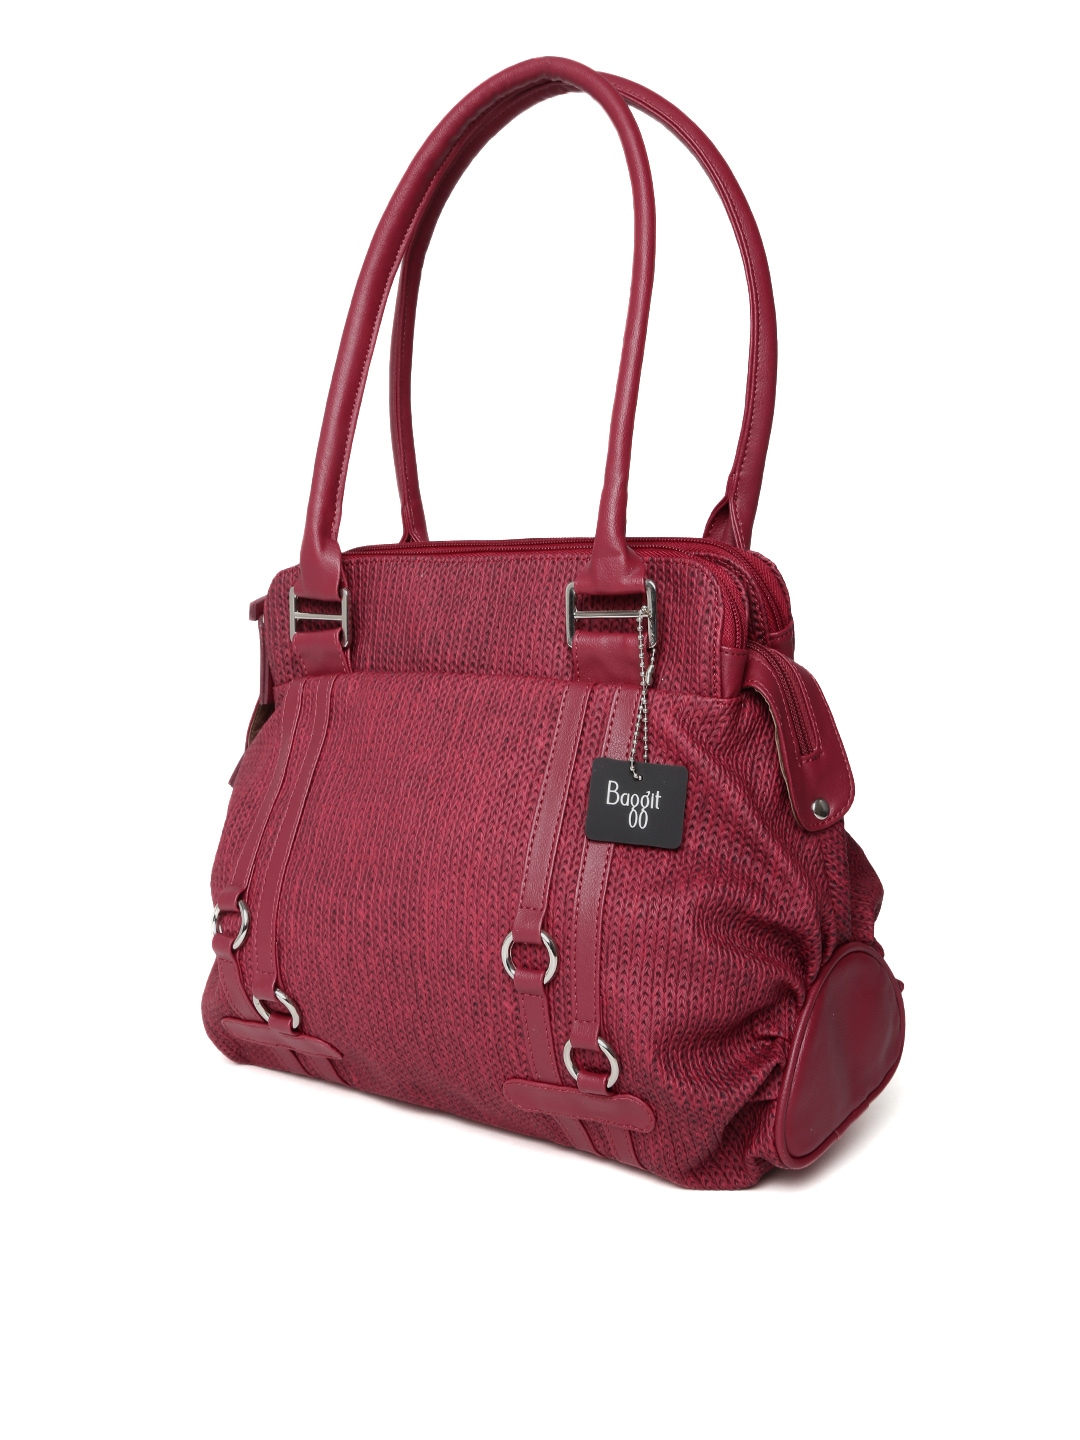 Myntra Baggit Maroon Shoulder Bag 700205 | Buy Myntra Baggit Handbags at best price online. All ...